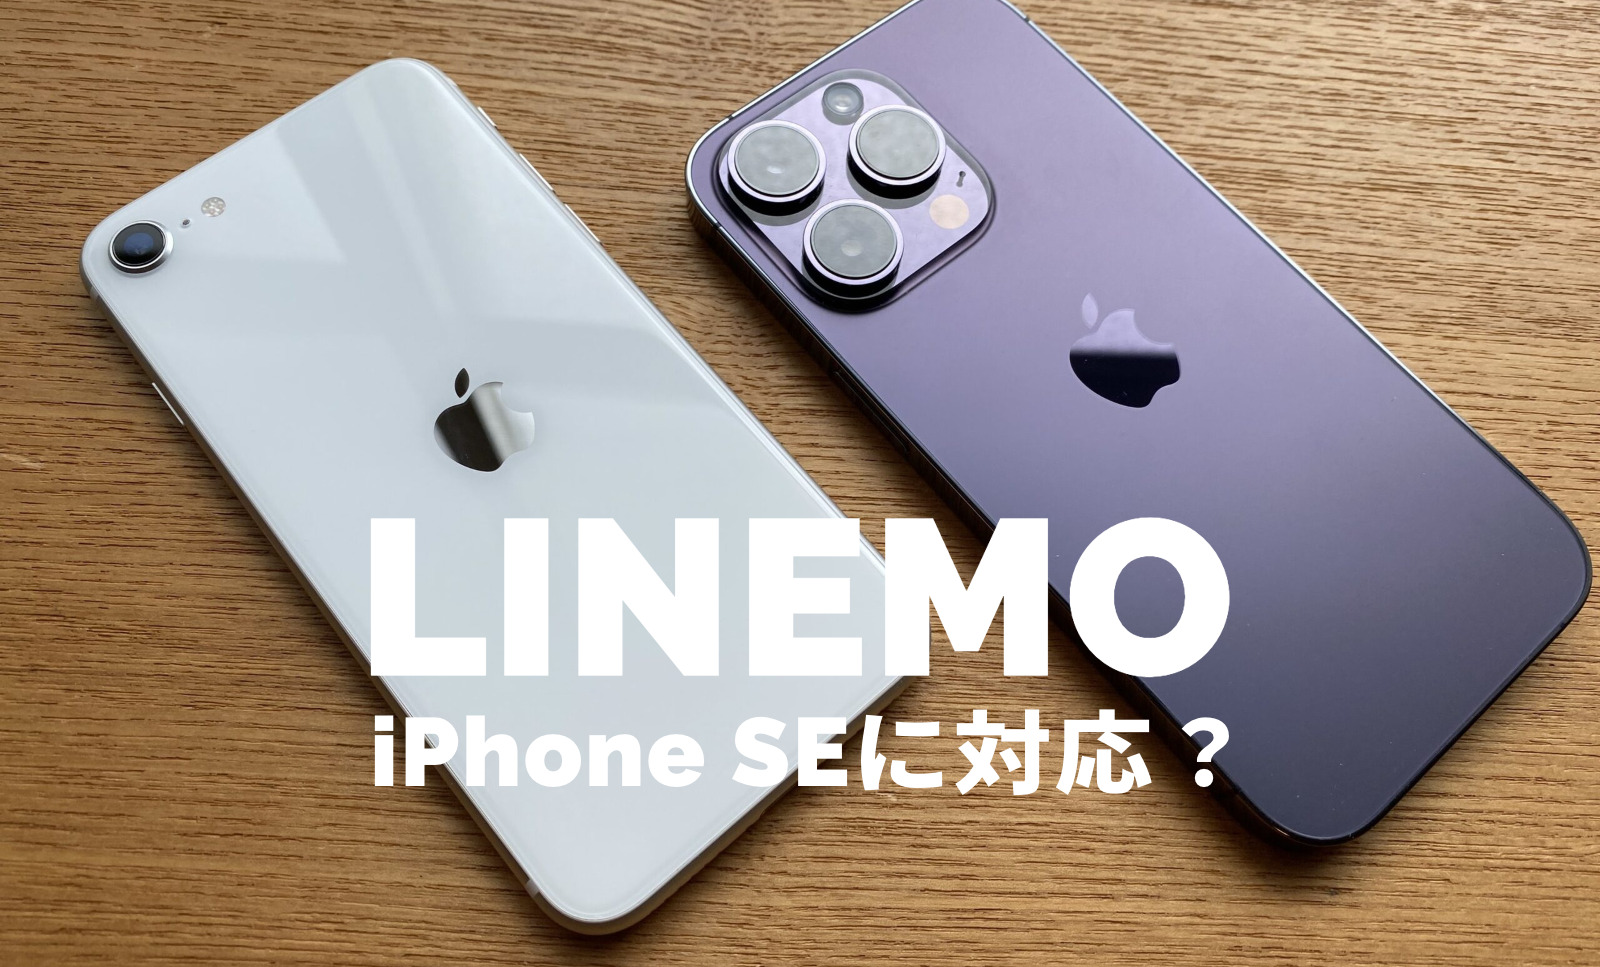 iPhone SE3(第3世代)はLINEMO(ラインモ)の対応機種。SE(第2世代)も使えるが販売はなし。のサムネイル画像